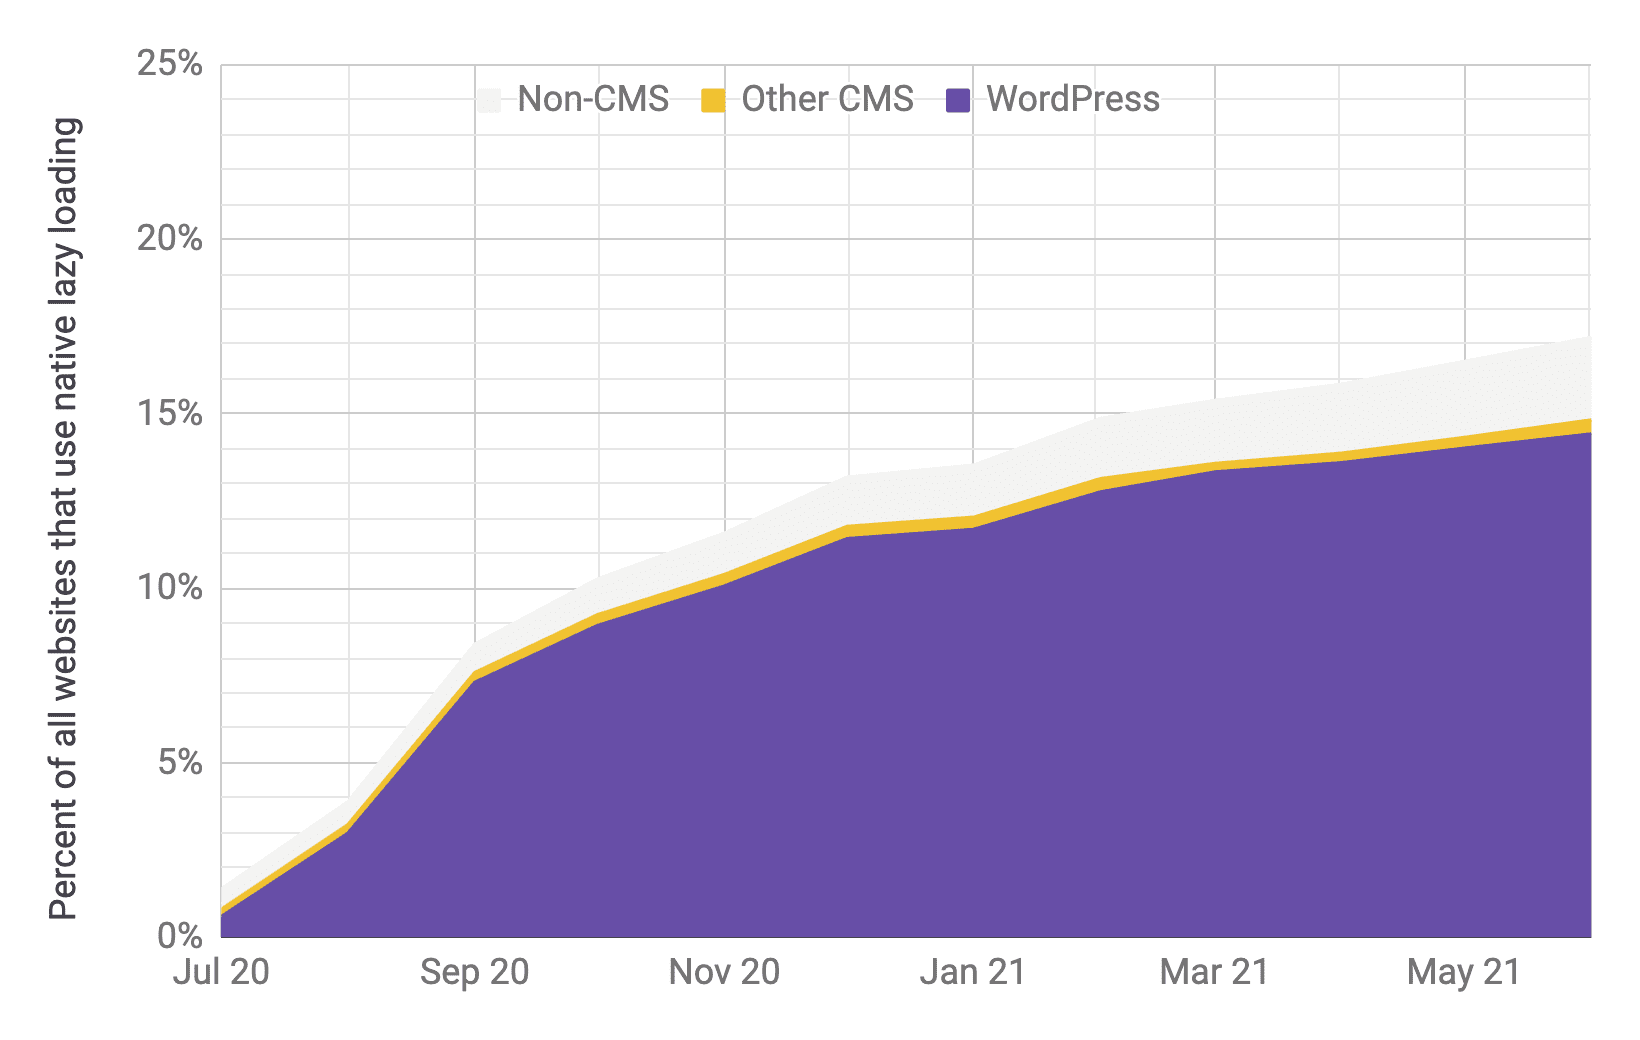 다른 CMS 및 비 CMS에 비해 WordPress가 주요 역할을 하고 있는 상태에서의 지연 로드 채택을 보여주는 시계열 차트(이전 차트와 비슷한 비율). 총 채택률은 2020년 7월부터 2021년 6월까지 1% 에서 17% 로 빠르게 증가한 것으로 보입니다.